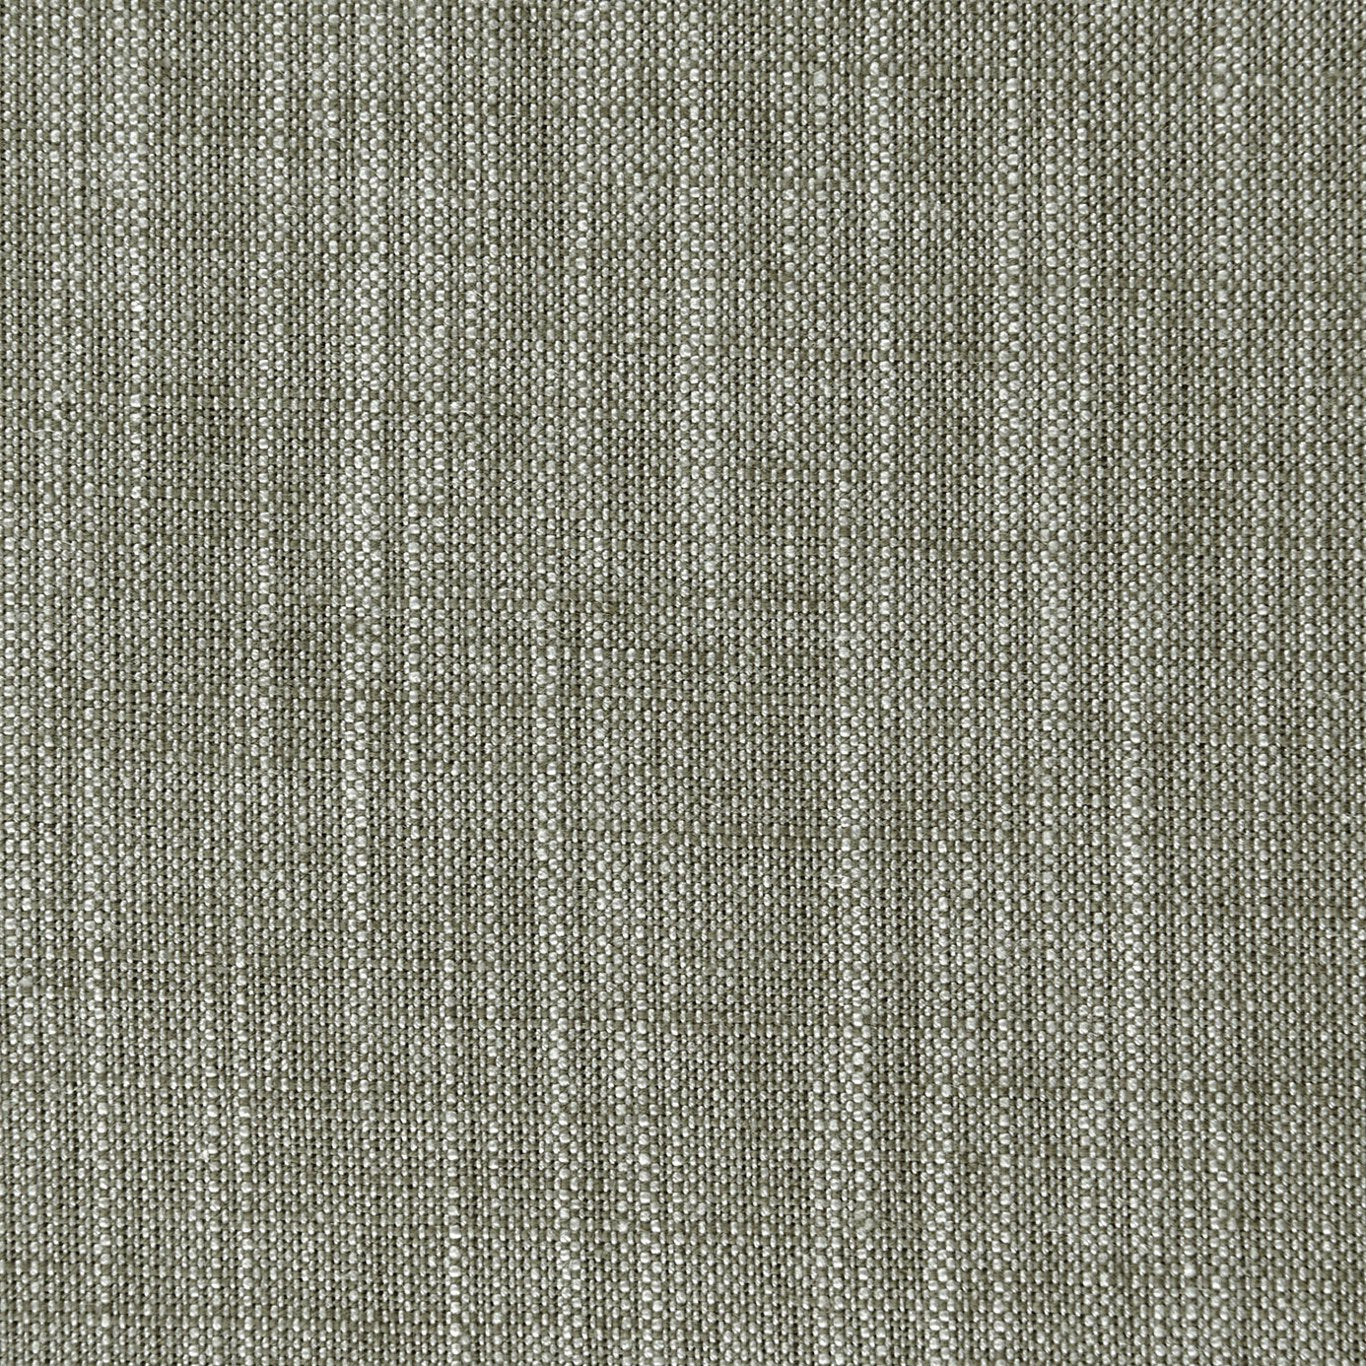 Biarritz Fabric by Clarke & Clarke - F0965/25 - Khaki